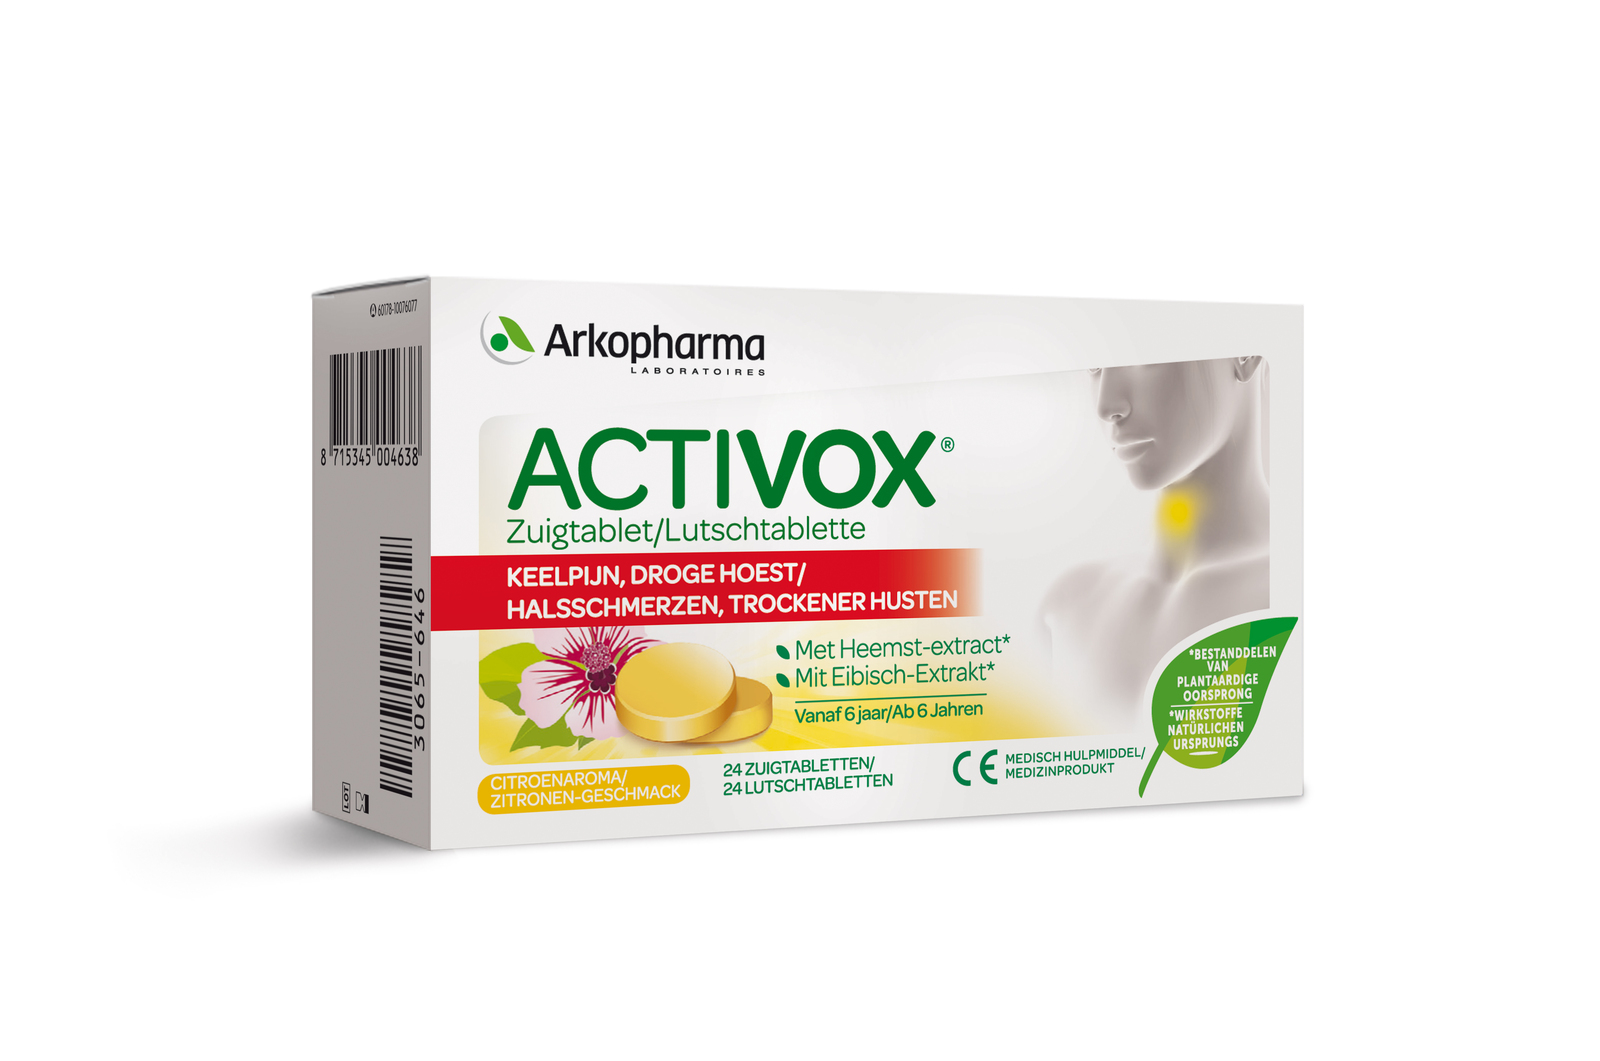 Arkopharma Activox Keelpijn Zuigtabletten kopen